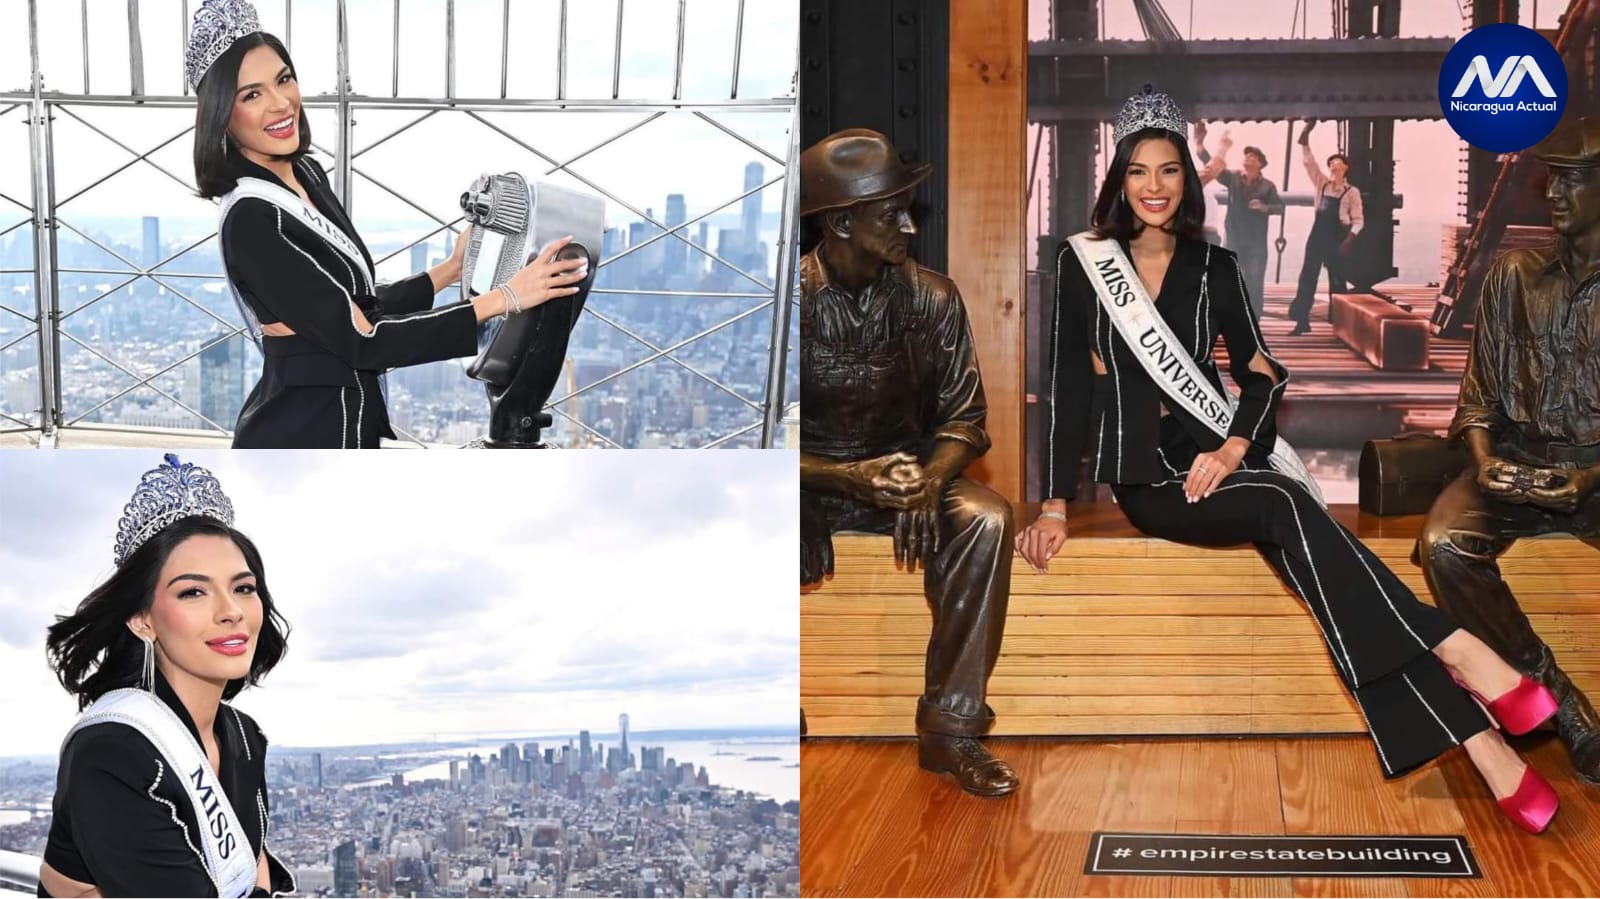 Miss Universo Sheynnis Palacios de visita en el Empire State en Nueva York. Foto: NA.